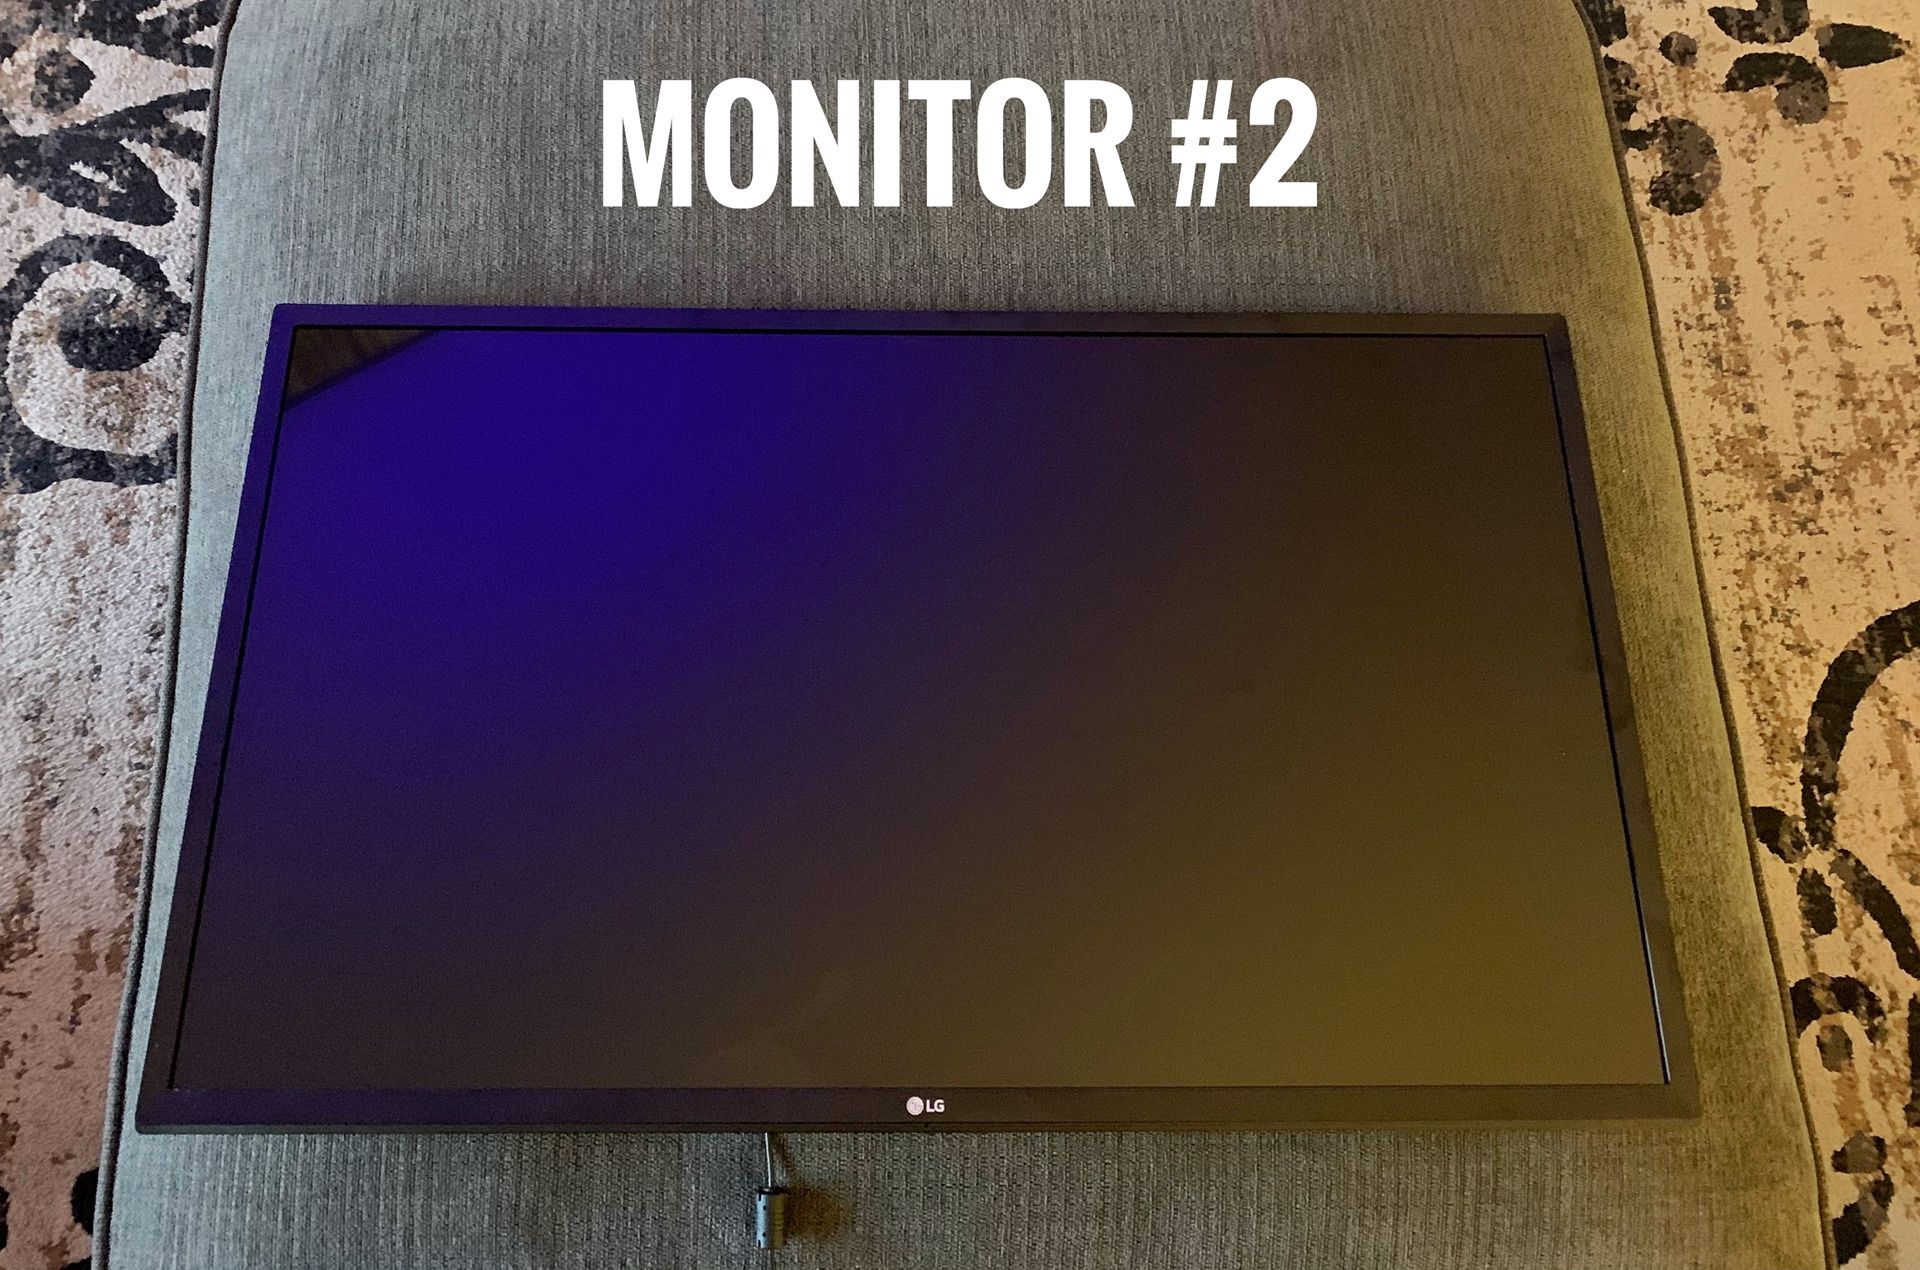 2 LG Monitors